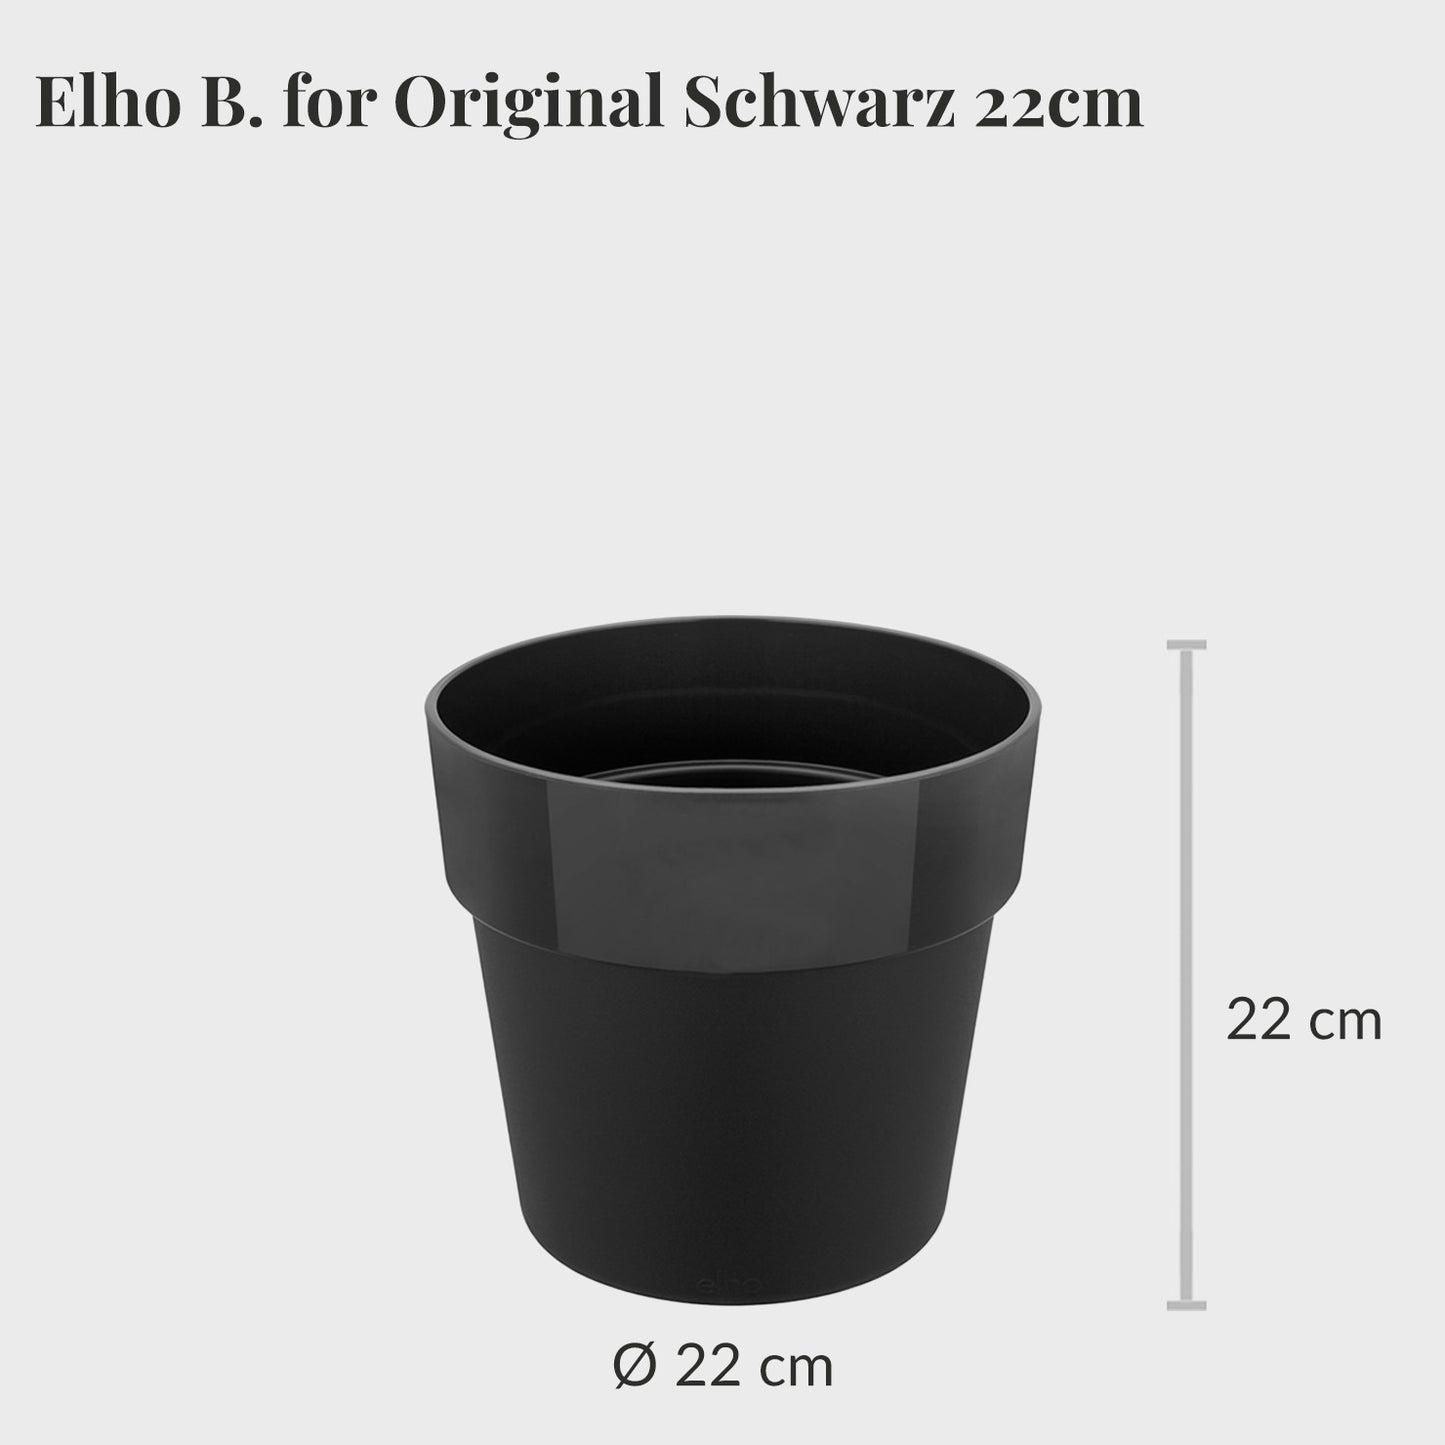 Elho B. for Original 22cm